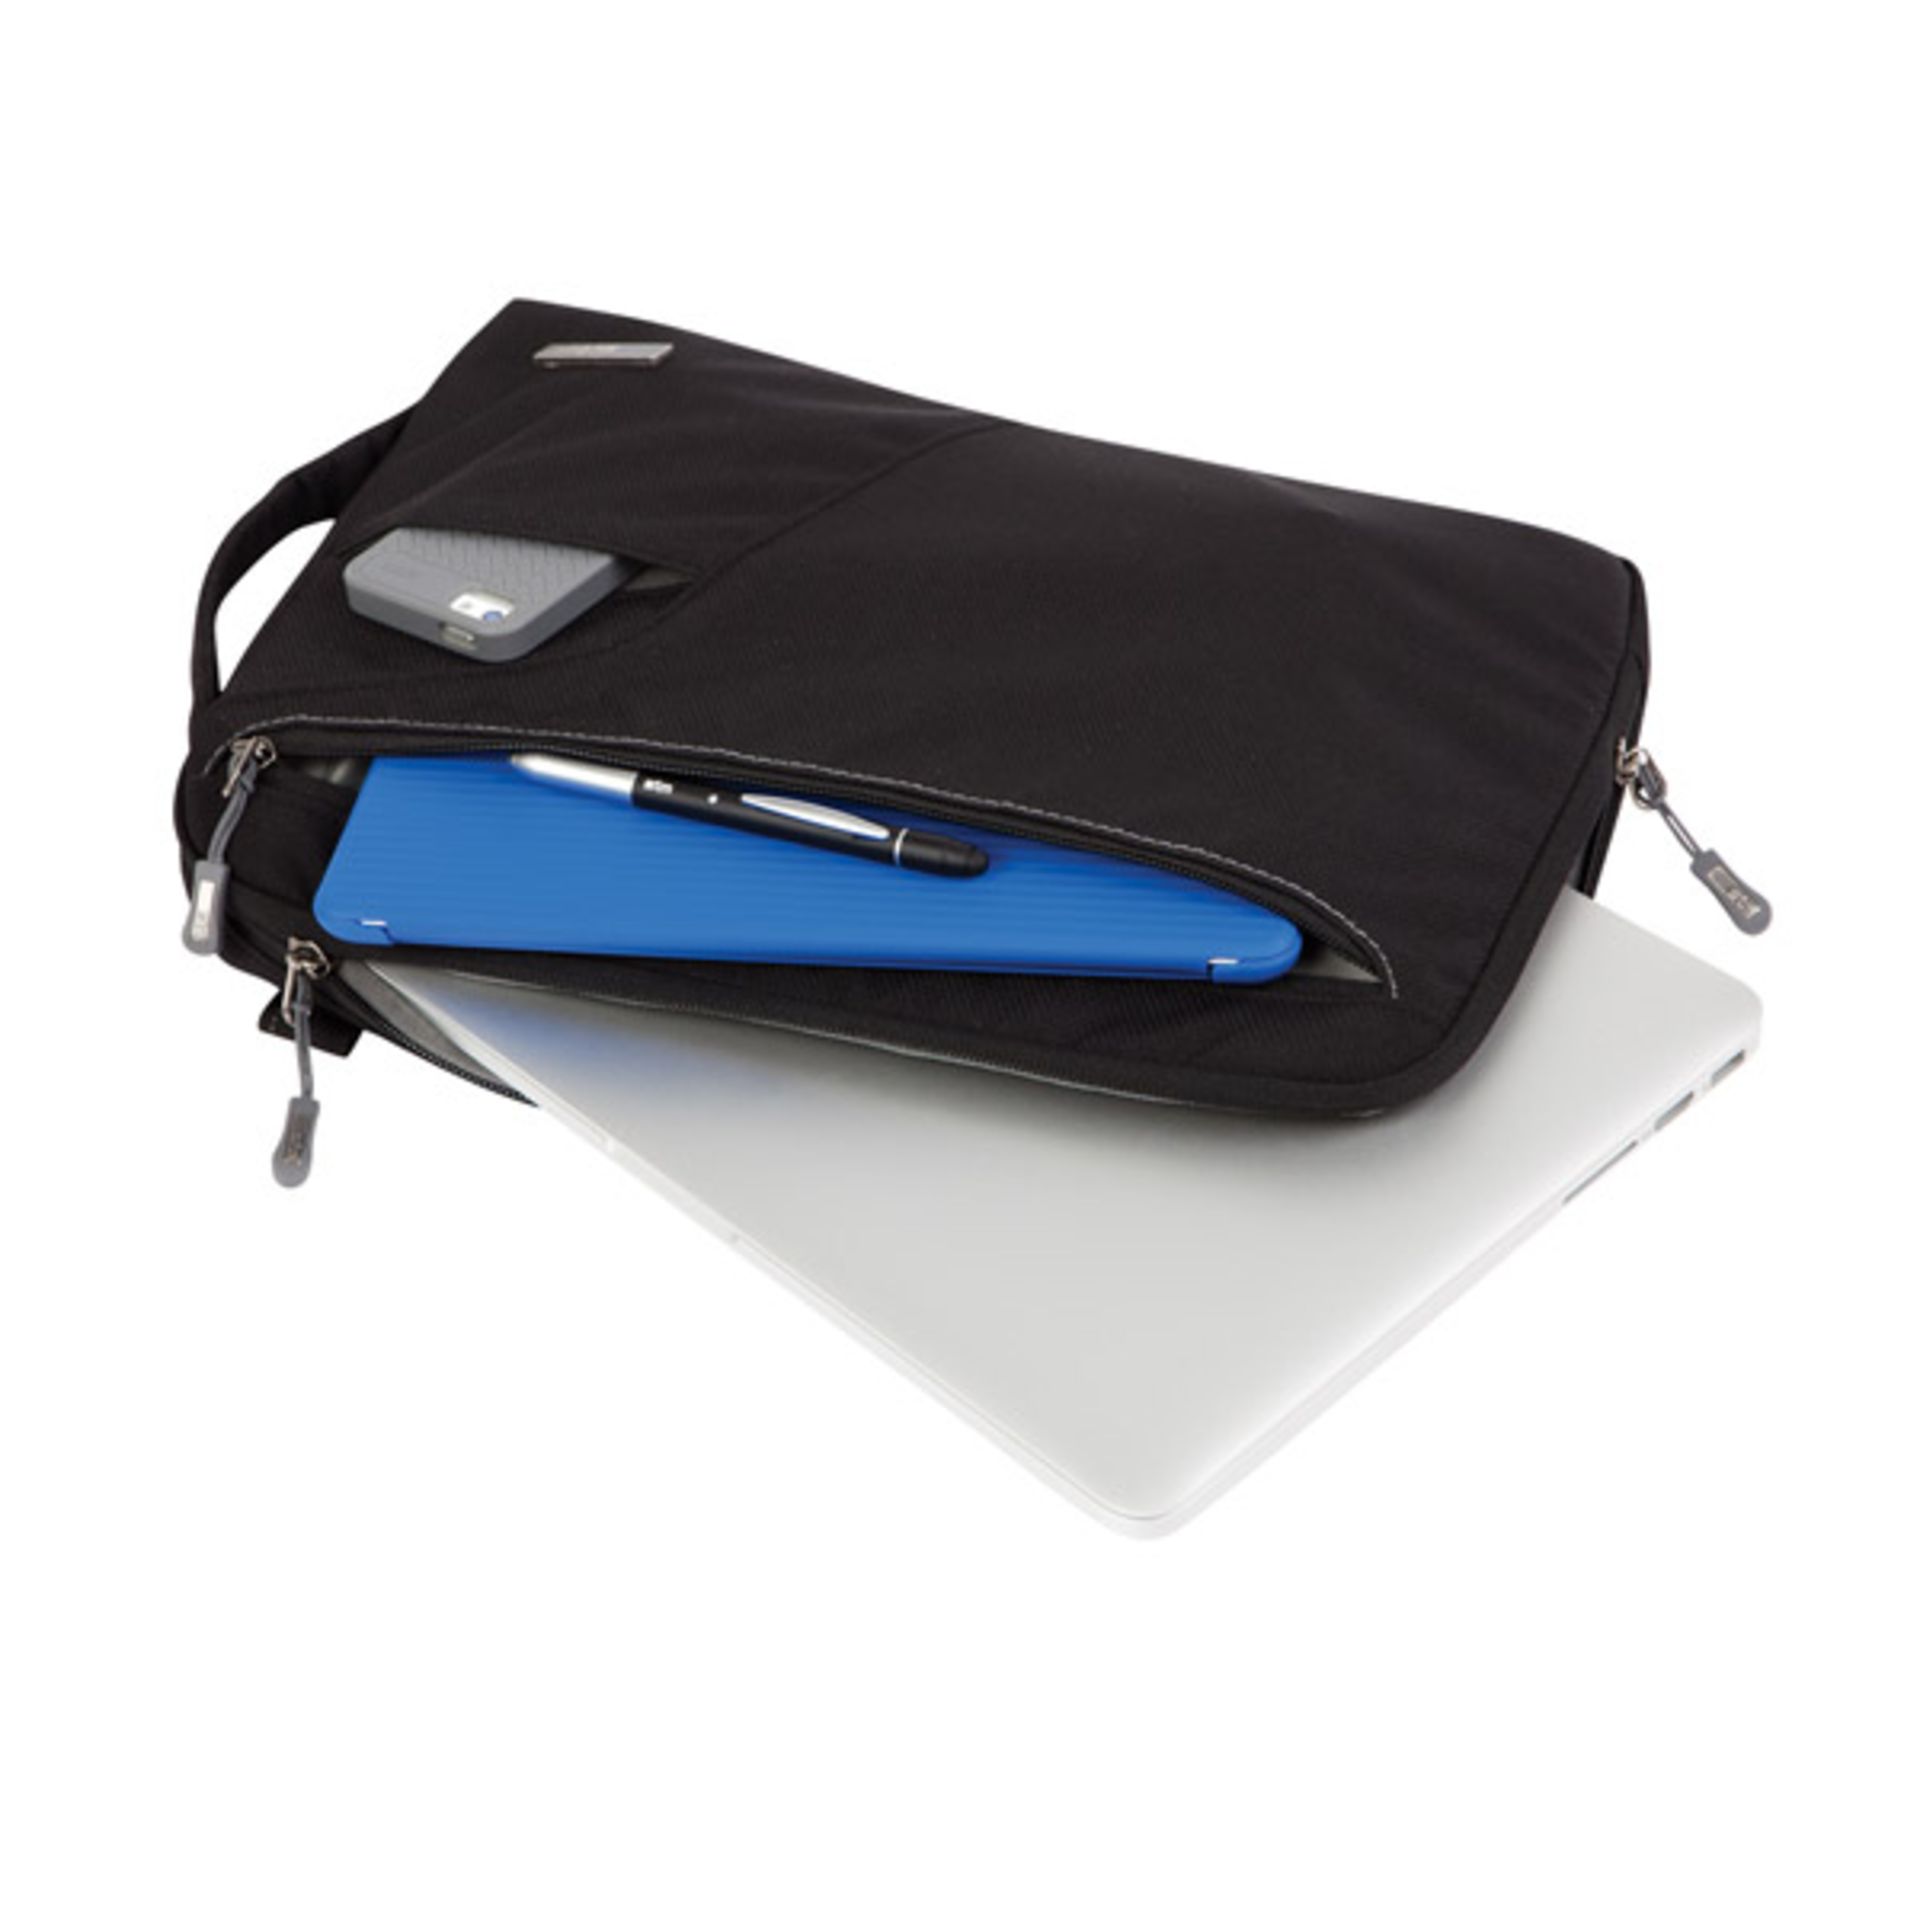 V Brand New STM Blazer Padded Sleeve - Bag For Laptops And Tablets 11" Black With Removable Shoulder - Image 3 of 4